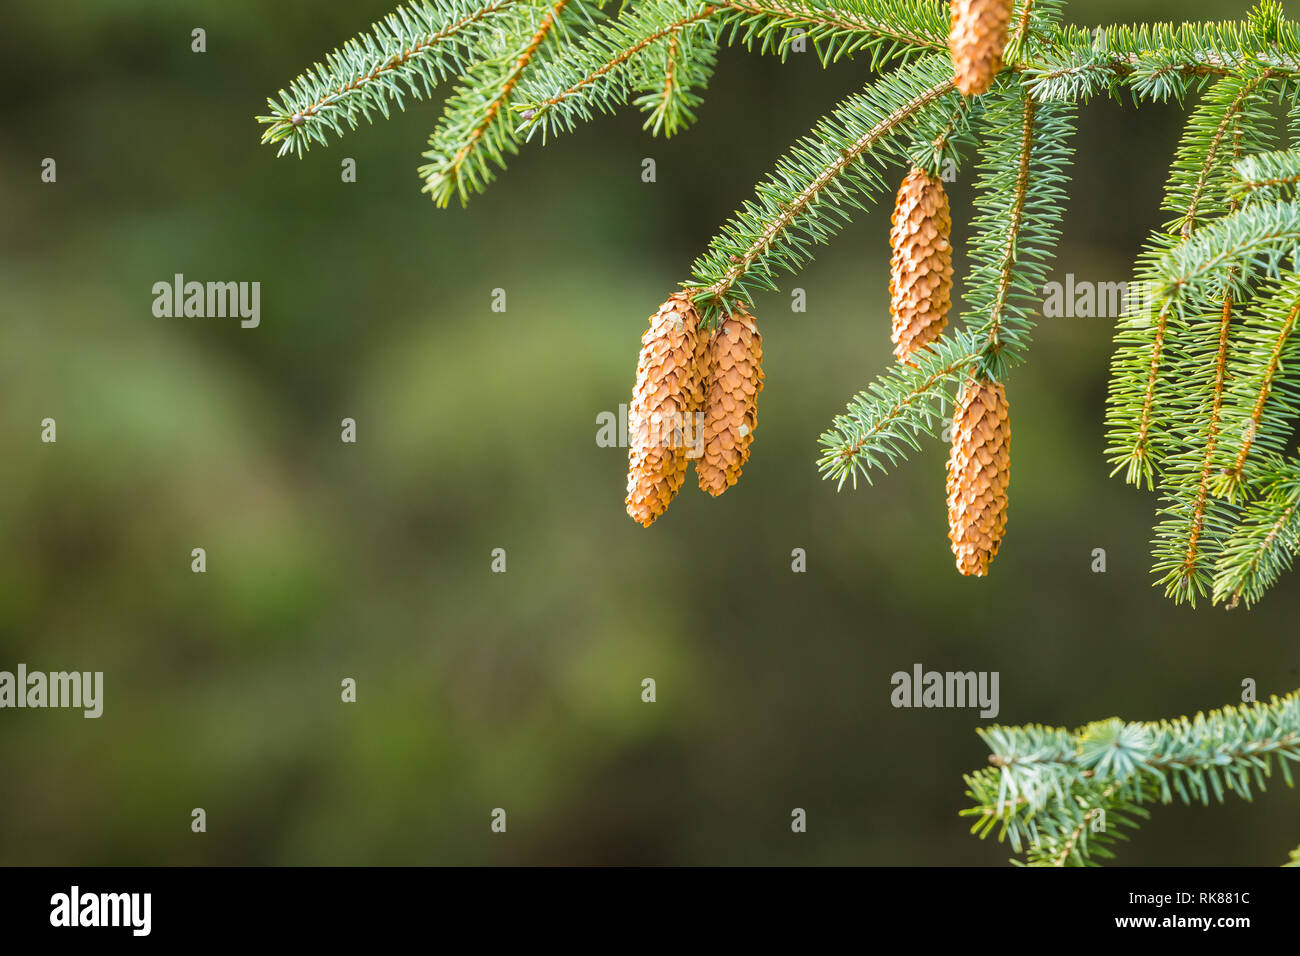 Tannenzapfen hängen von der immergrünen Zweigen einer Spruce Tree mit Grünen Tannennadeln. Unscharfer Hintergrund. Platz für Kopieren. Landschaft Stockfoto